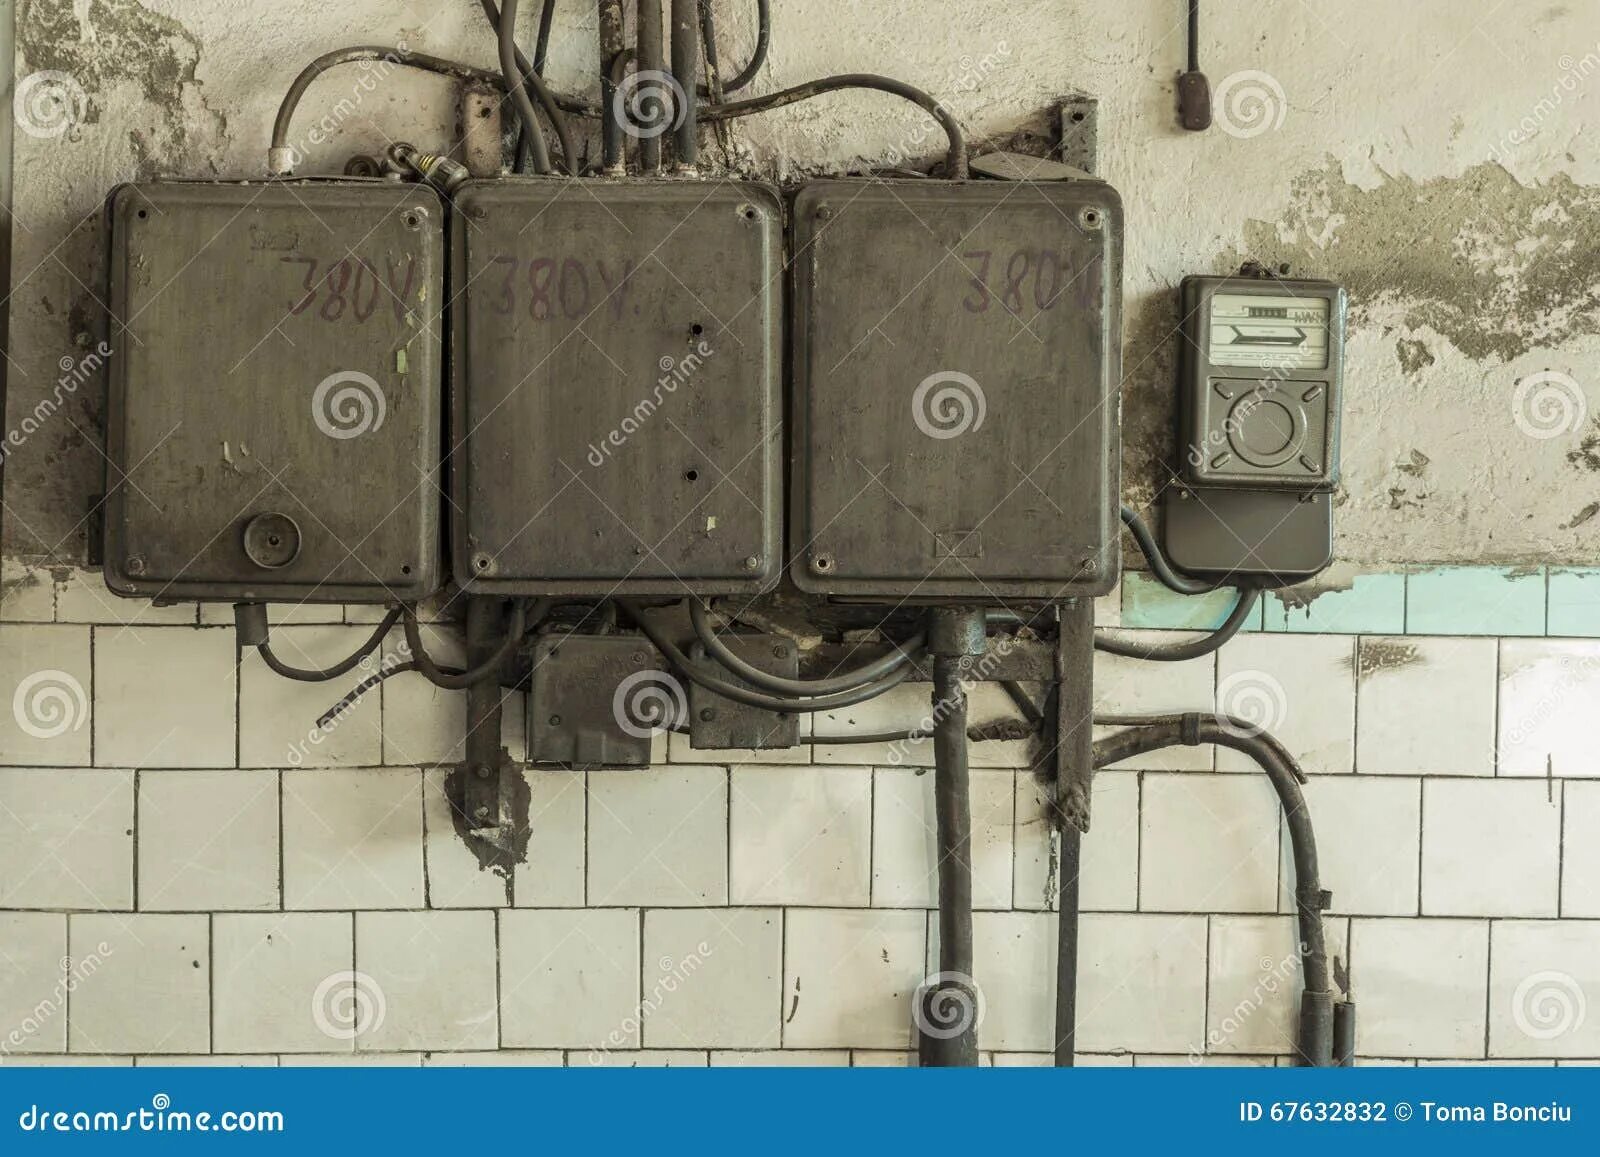 Стар электро. Старые электрические оборудования. Ржавые электрические щиты. Old Electric Shield. Vintage Electric Panel Lamp Alert.